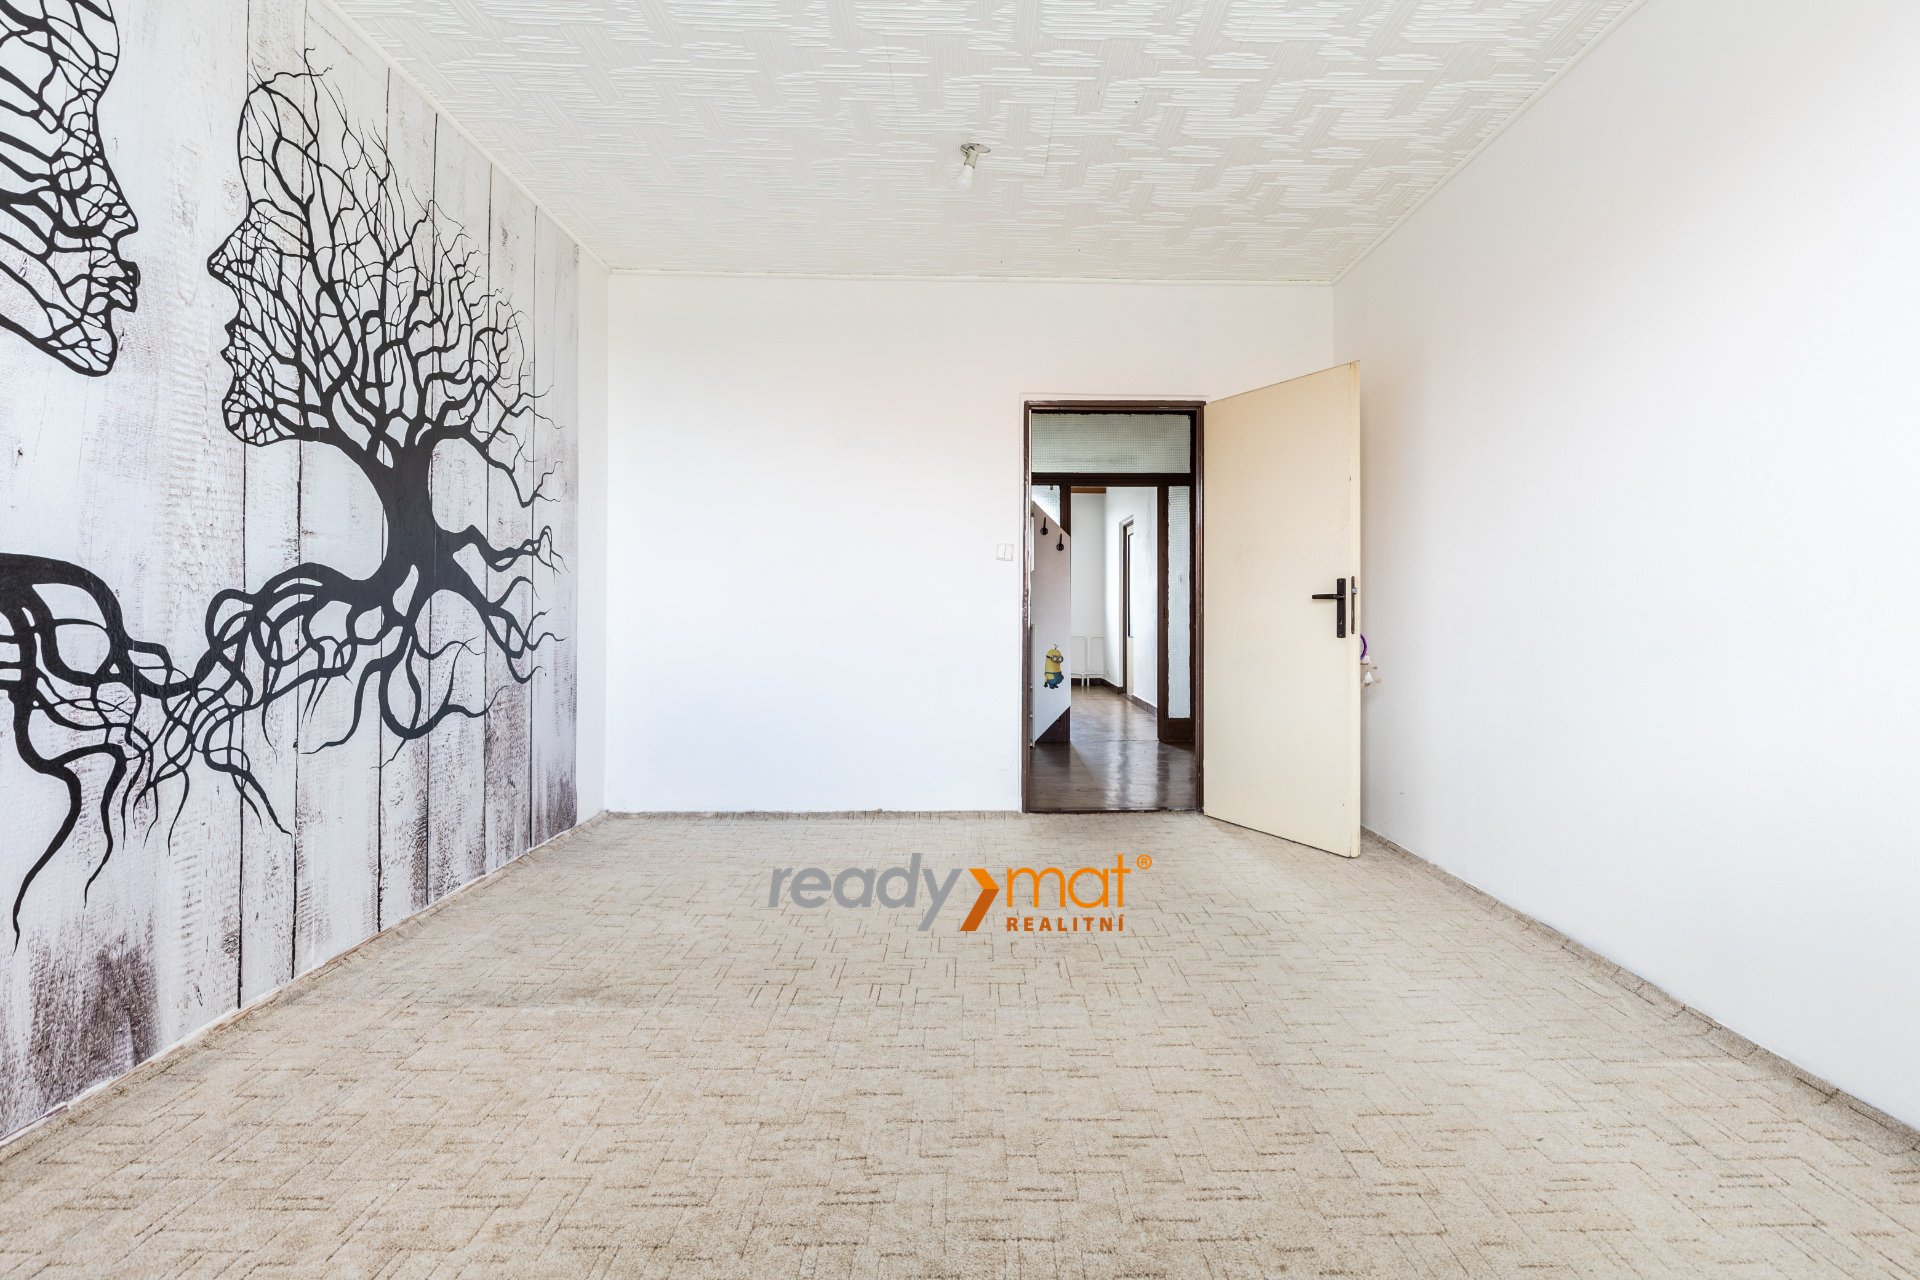 Prodej, Byty 3+1, 98 m² – Hodonín - ready-mat realitní